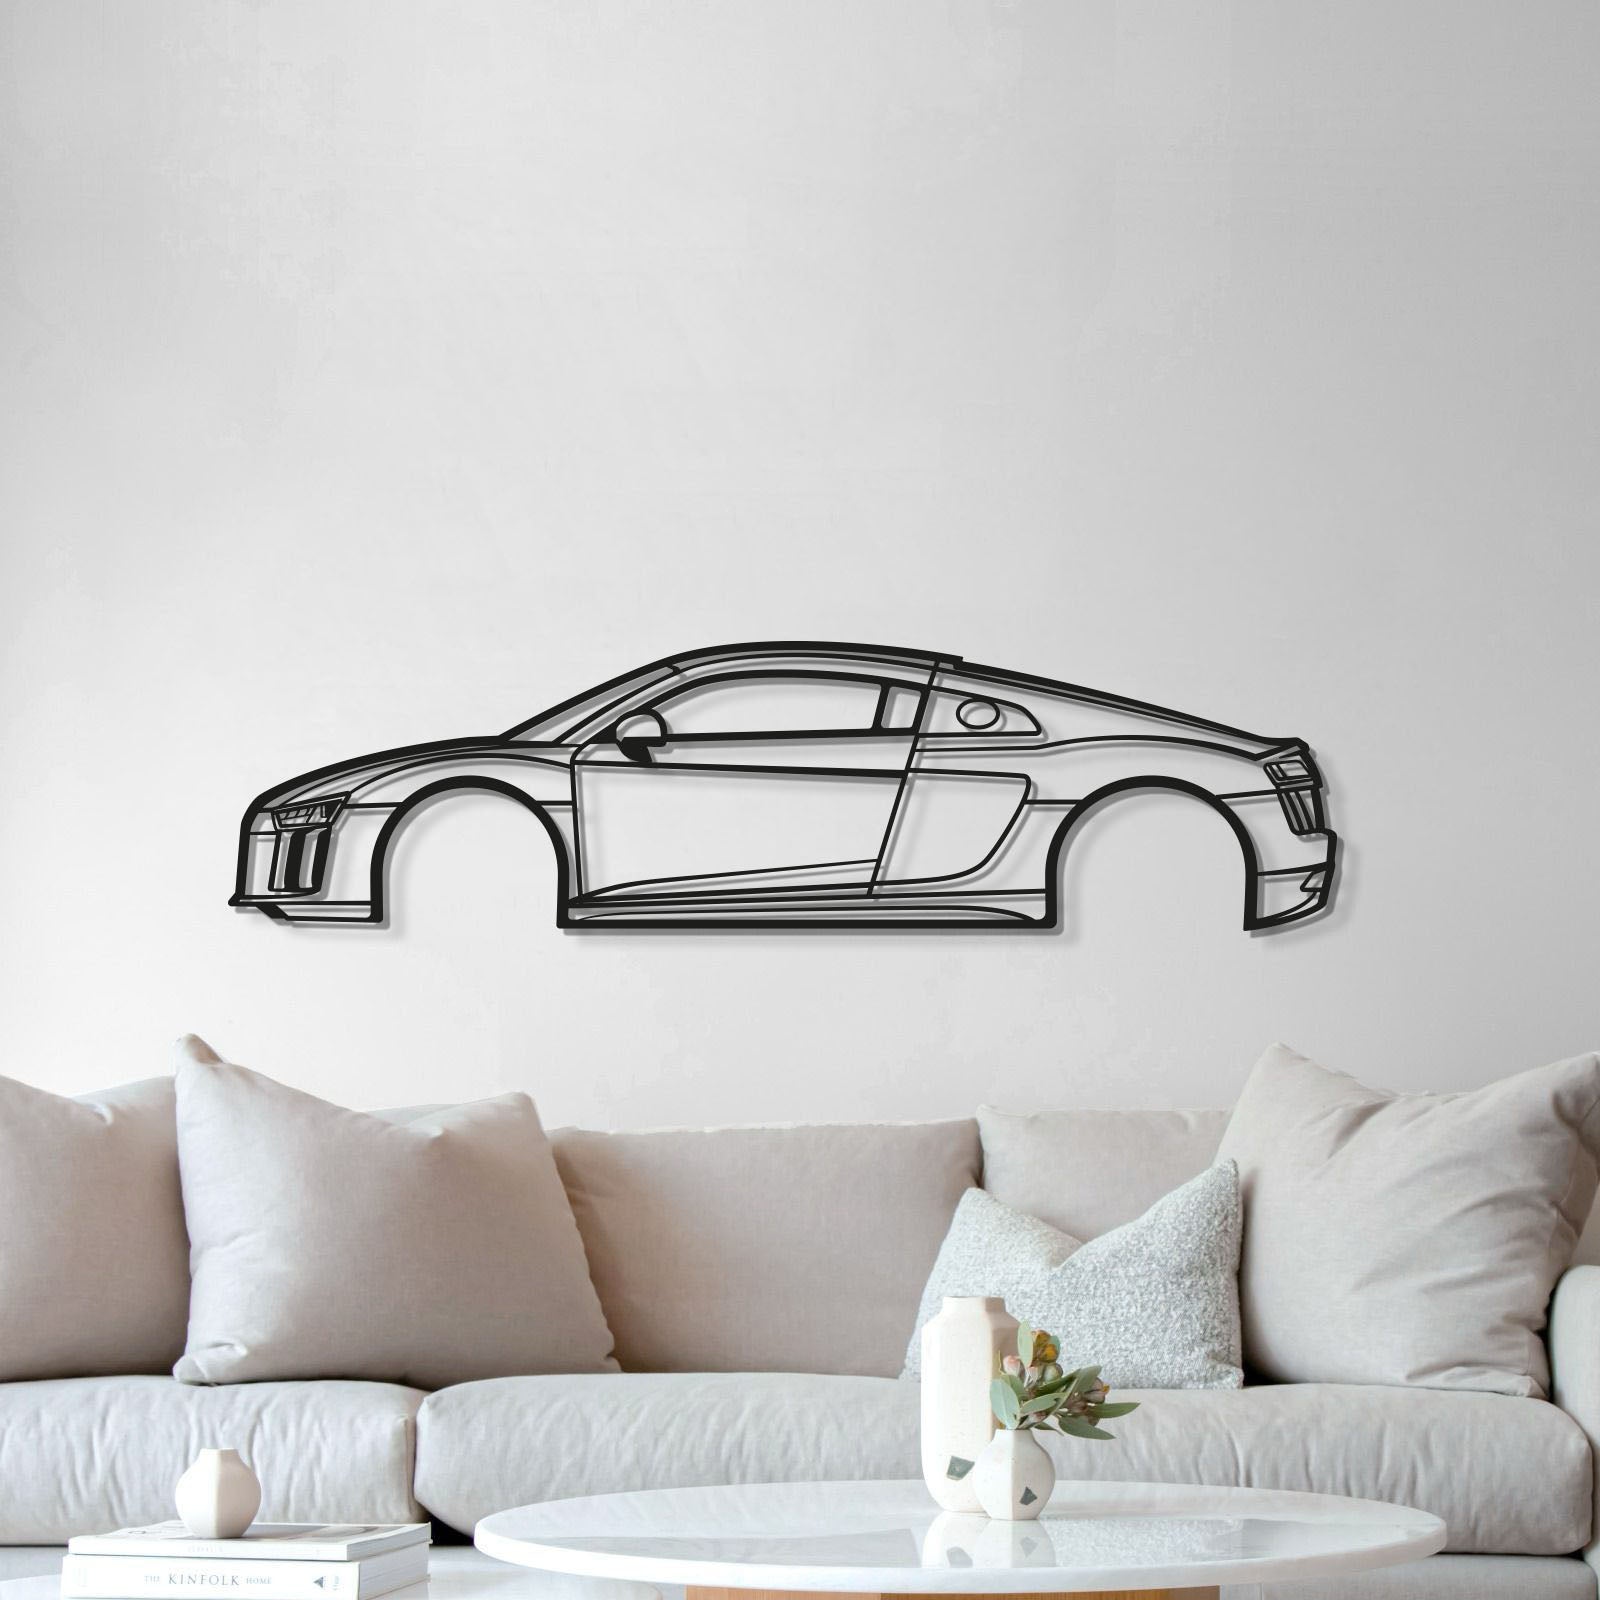 2017 RS8 V10 Metal Car Wall Art - MT0604